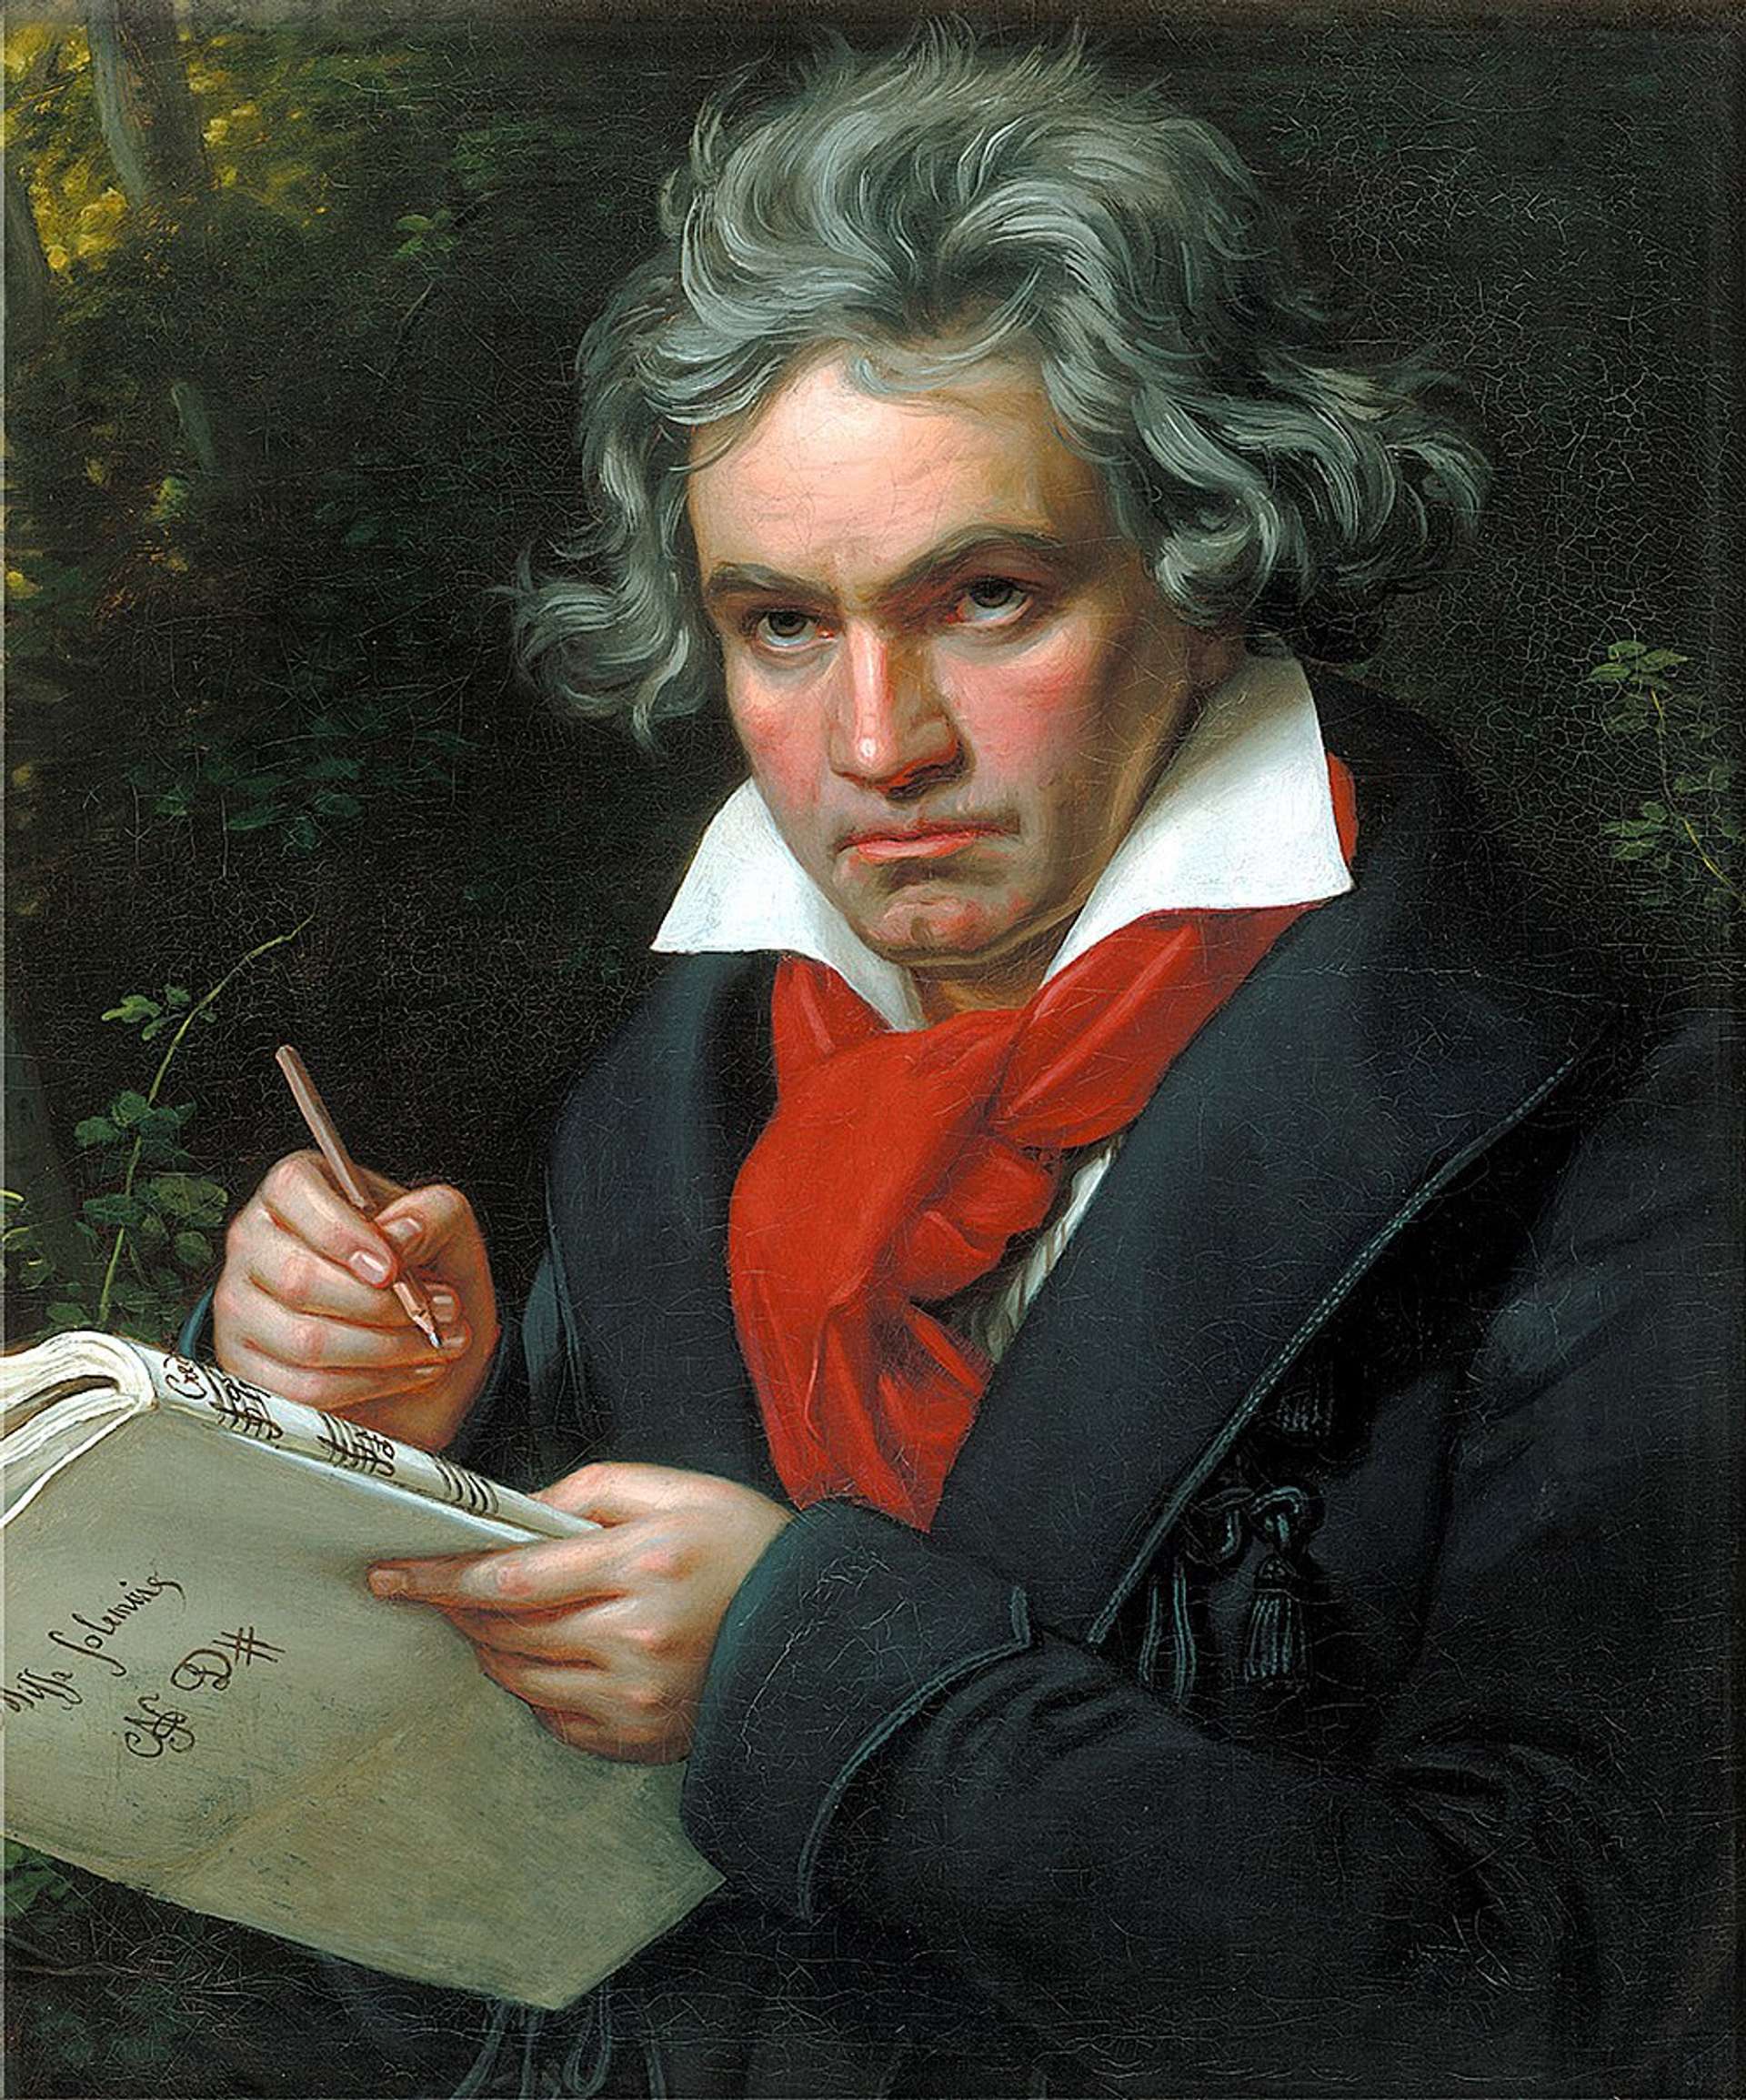 Painting of Ludwig Van Beethoven by Joseph Karl Stieler